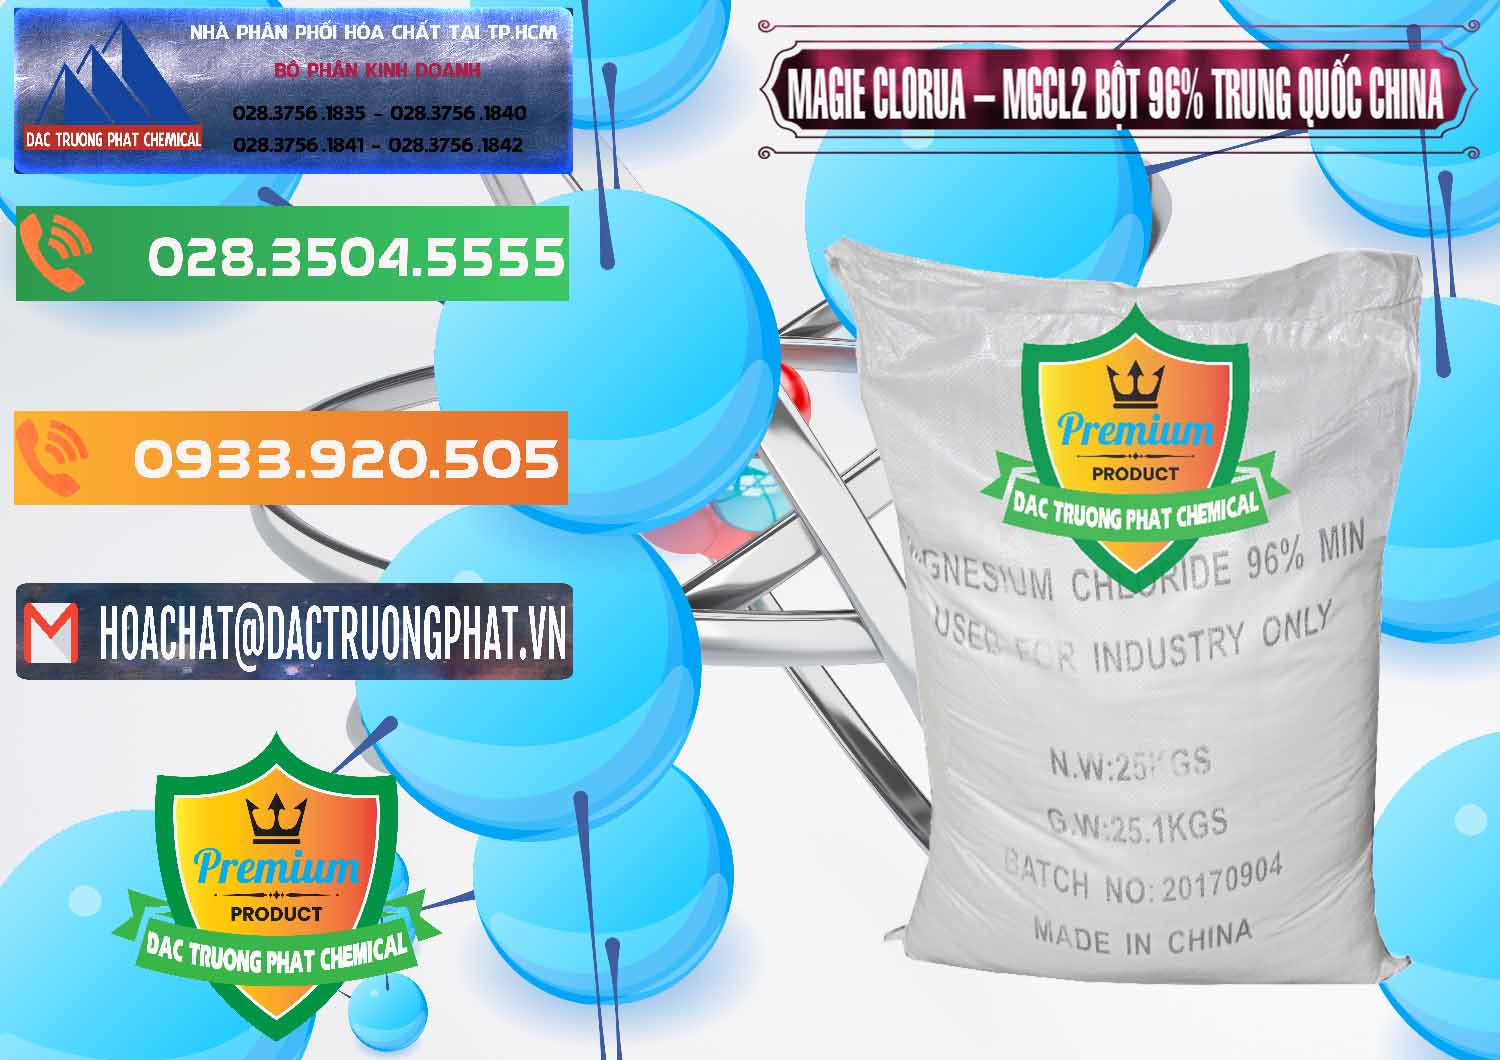 Cty bán _ phân phối Magie Clorua – MGCL2 96% Dạng Bột Bao Chữ Đen Trung Quốc China - 0205 - Cty chuyên nhập khẩu và phân phối hóa chất tại TP.HCM - hoachatxulynuoc.com.vn